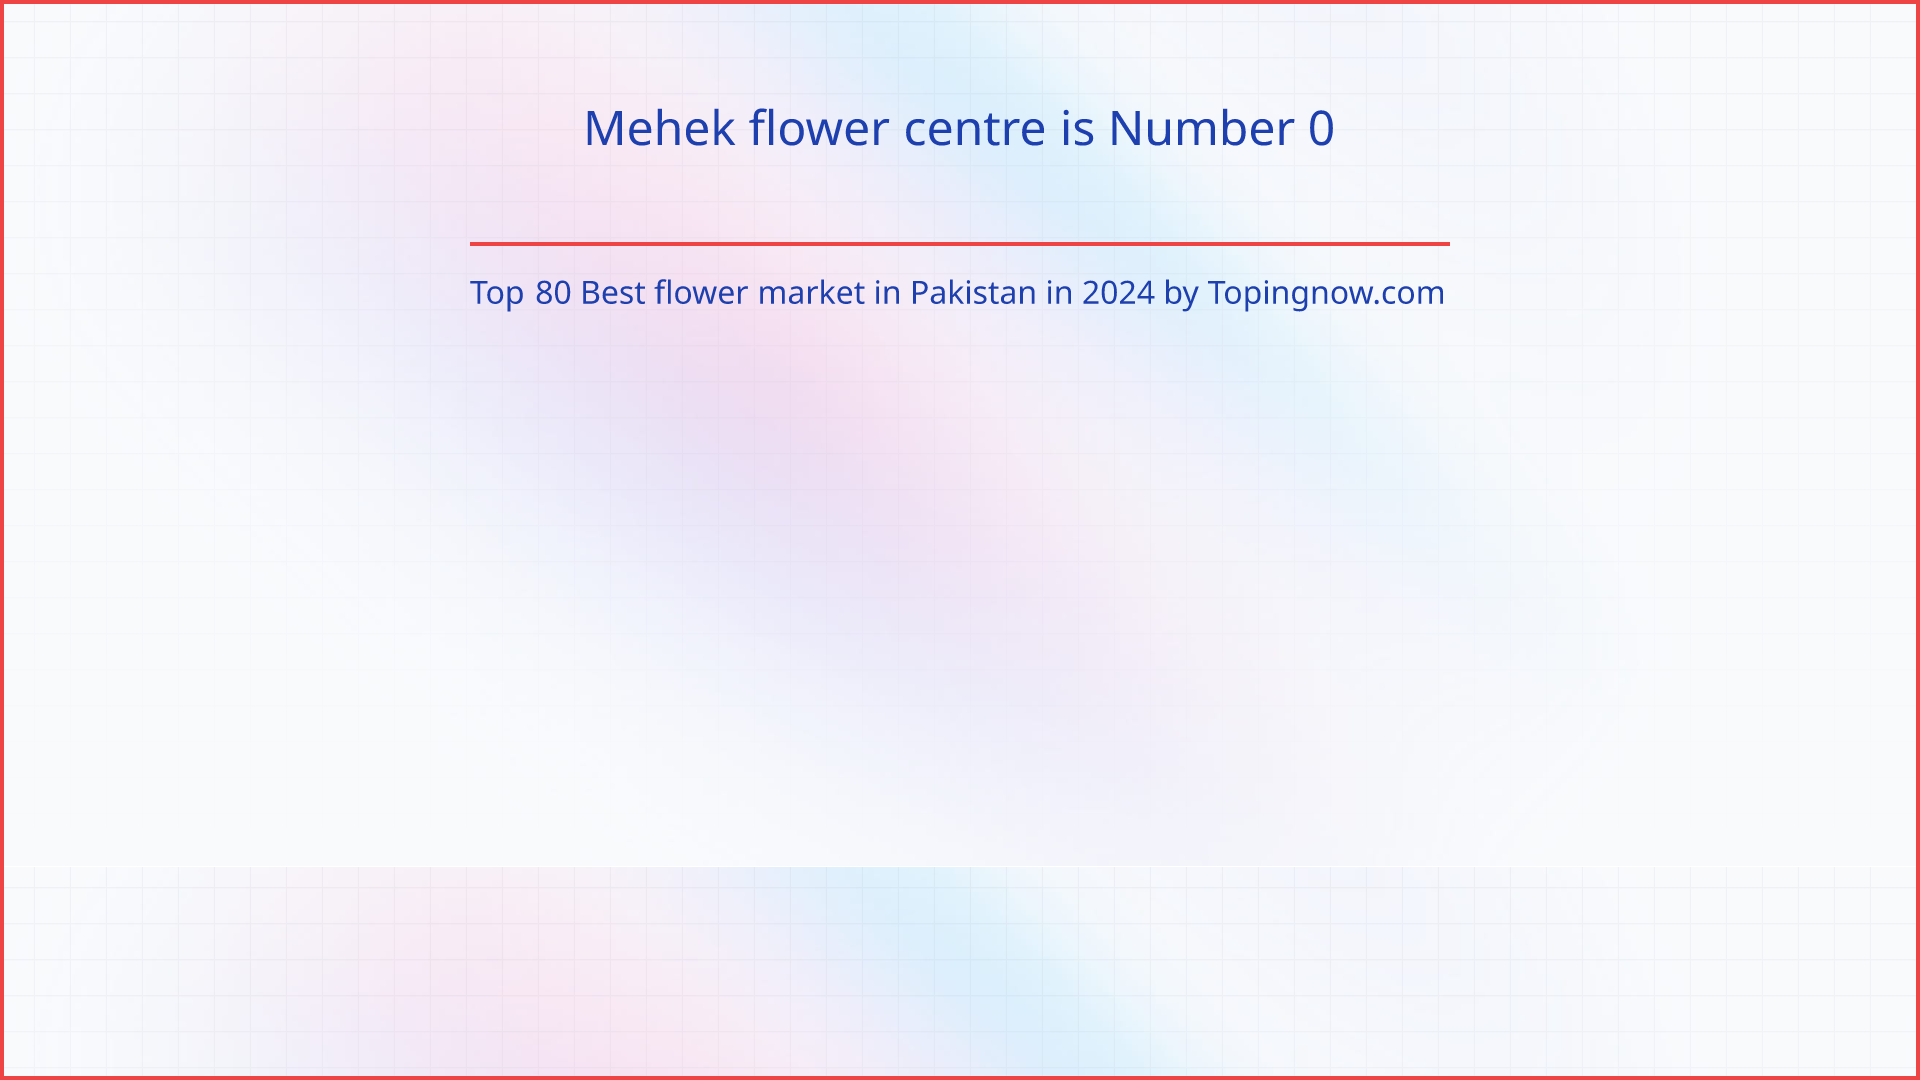 Mehek flower centre: Top 80 Best flower market in Pakistan in 2024